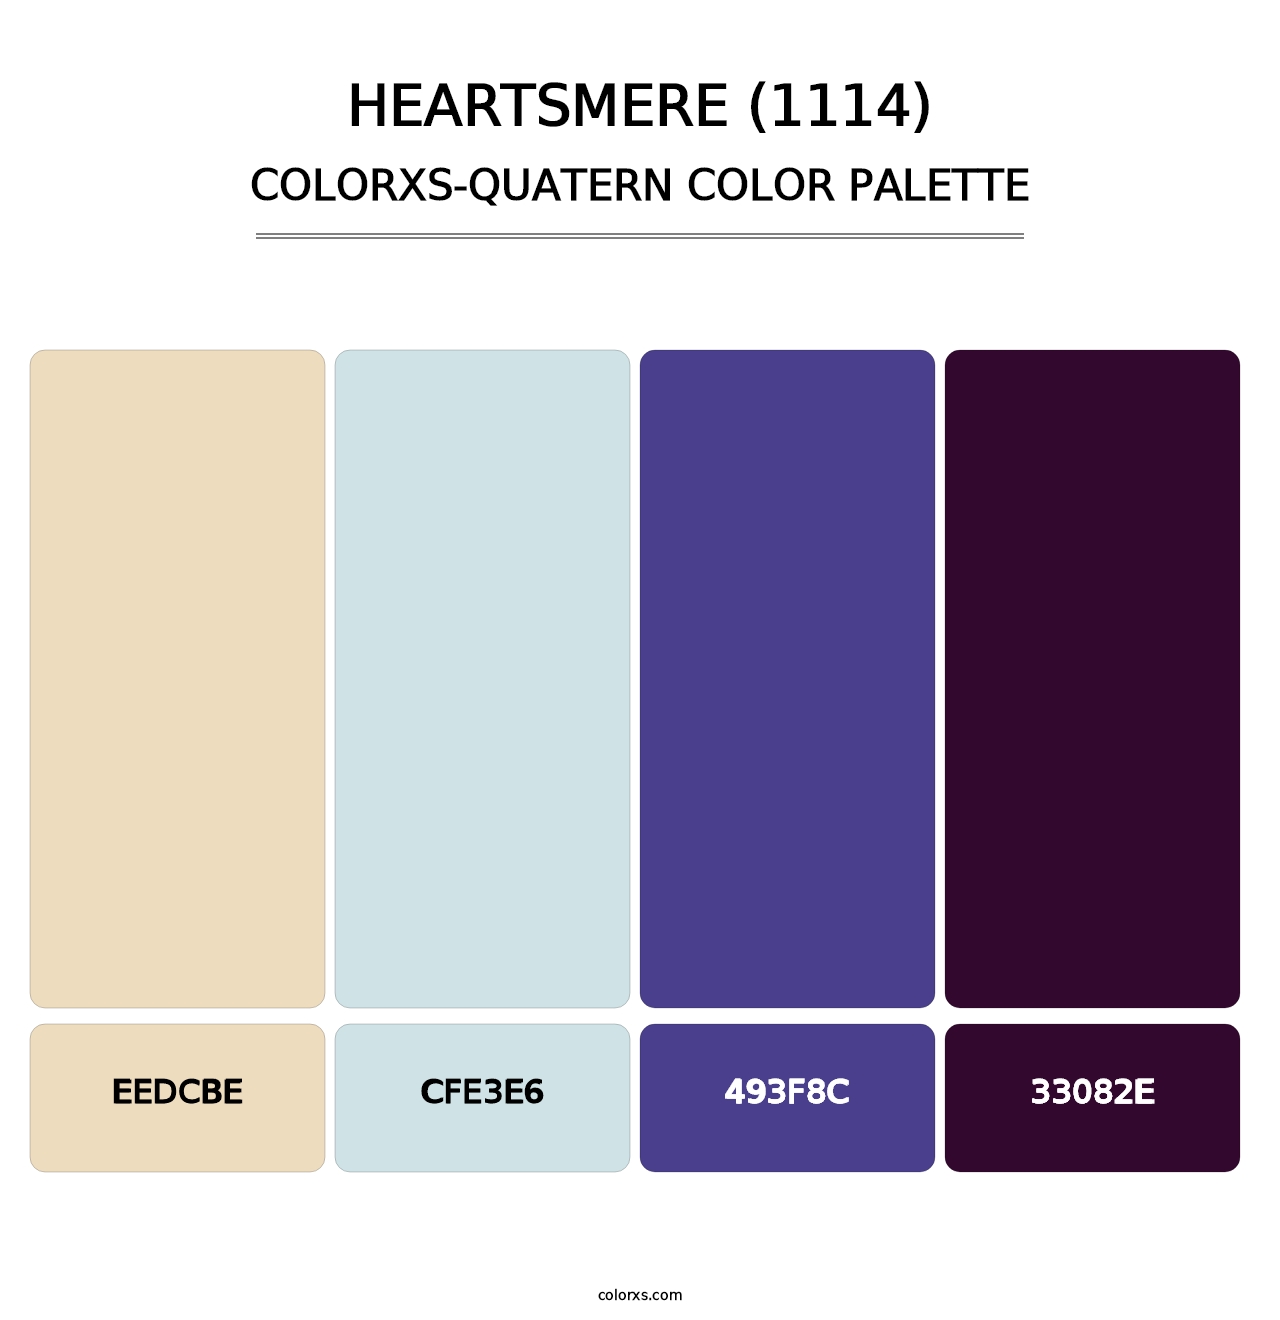 Heartsmere (1114) - Colorxs Quatern Palette